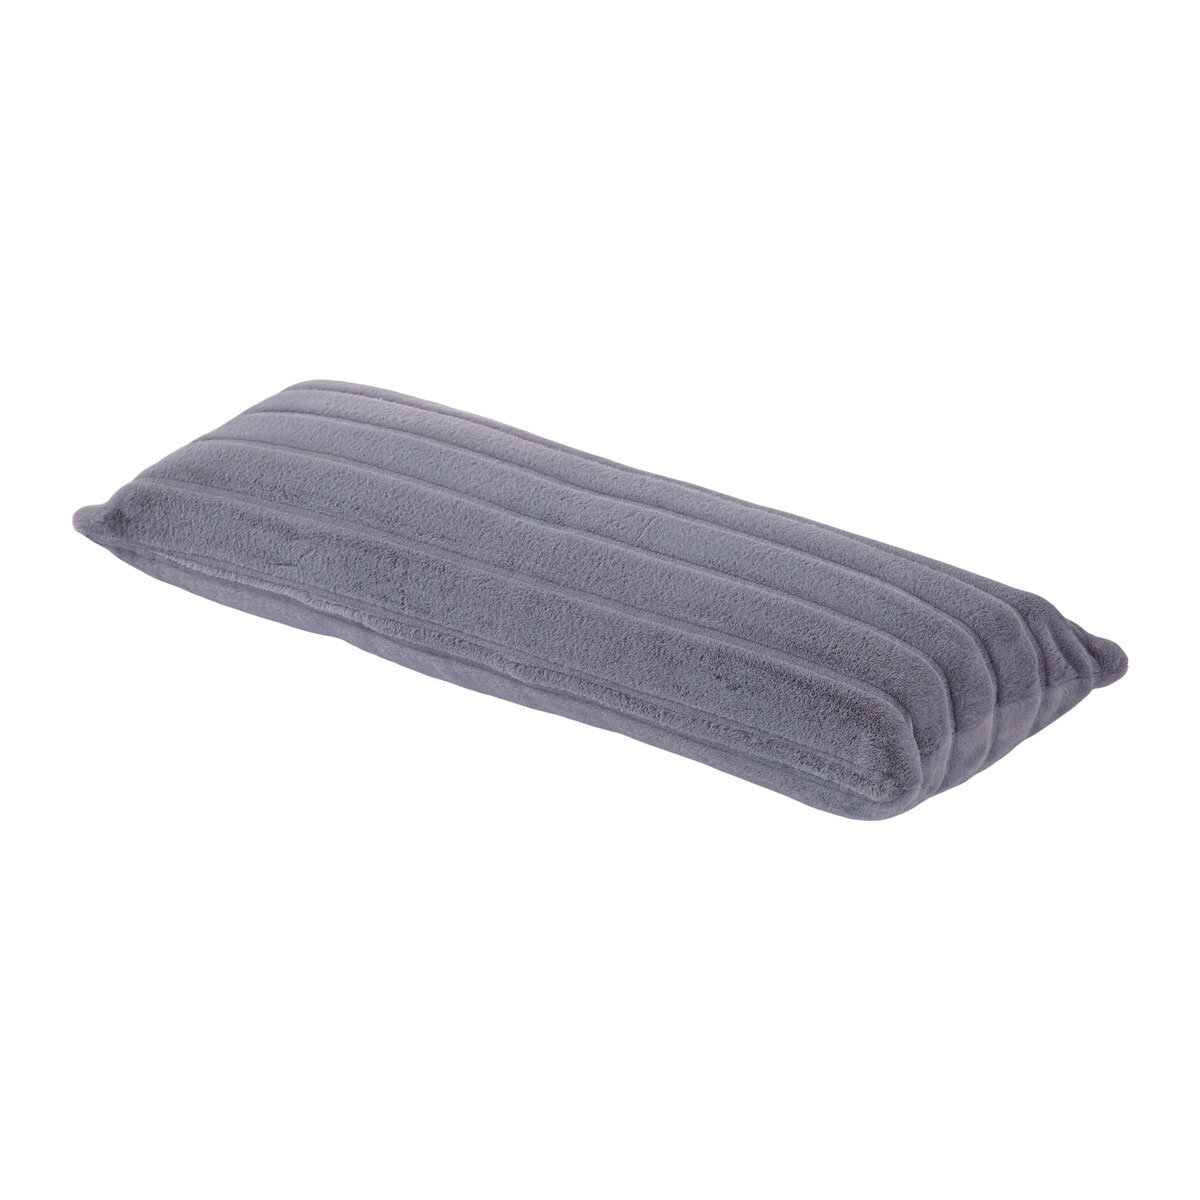 Faux Fur Body Pillow, 51 x 137 cm, Grey